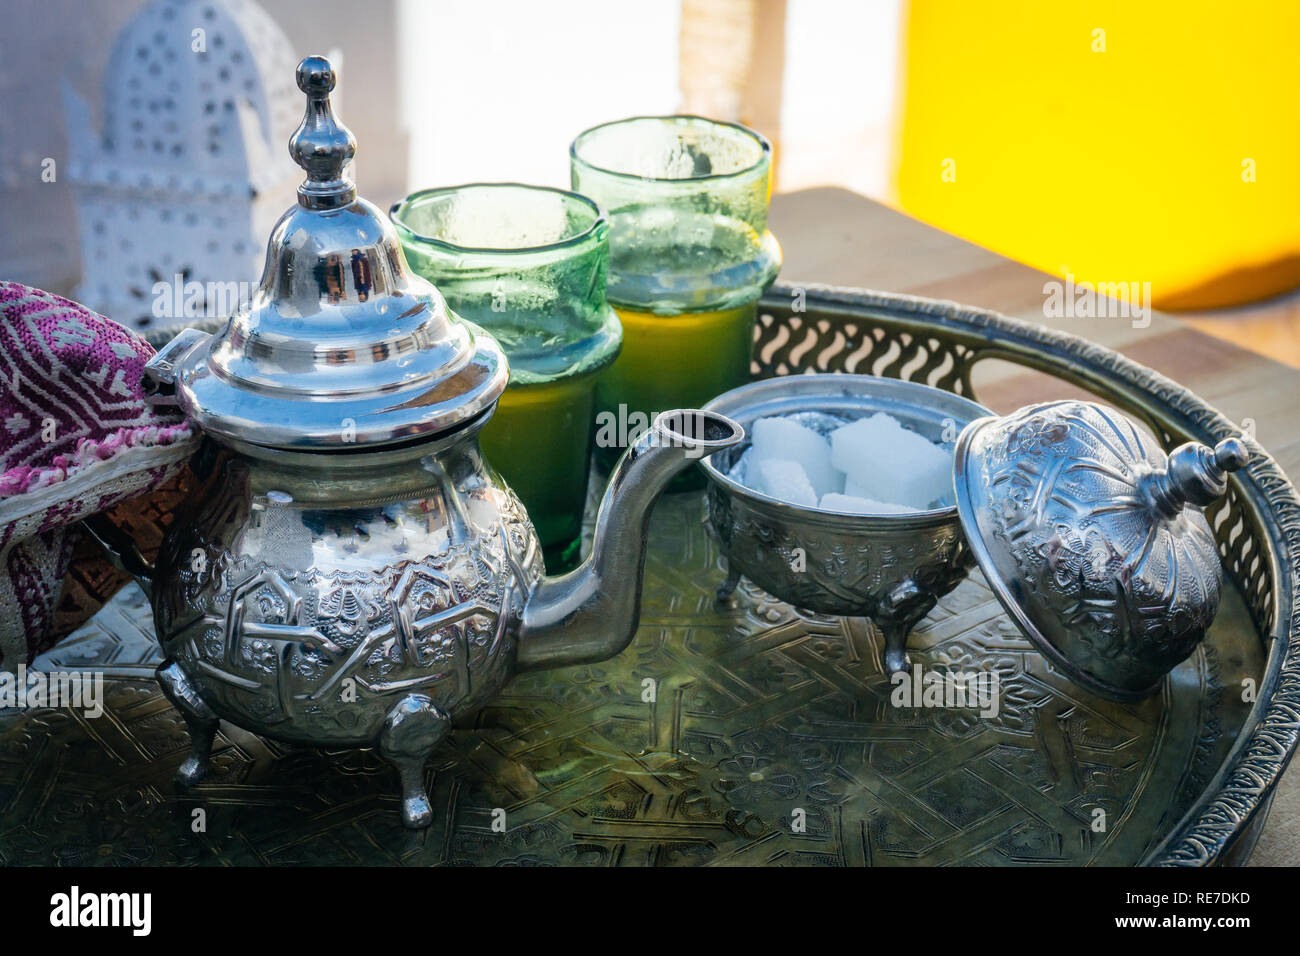 Thé à la menthe arabe (marocain le thé à la menthe) La boisson chaude dans le Moyen-Orient et le monde musulman. Servi dans une théière en argent fer spécial avec du sucre Banque D'Images